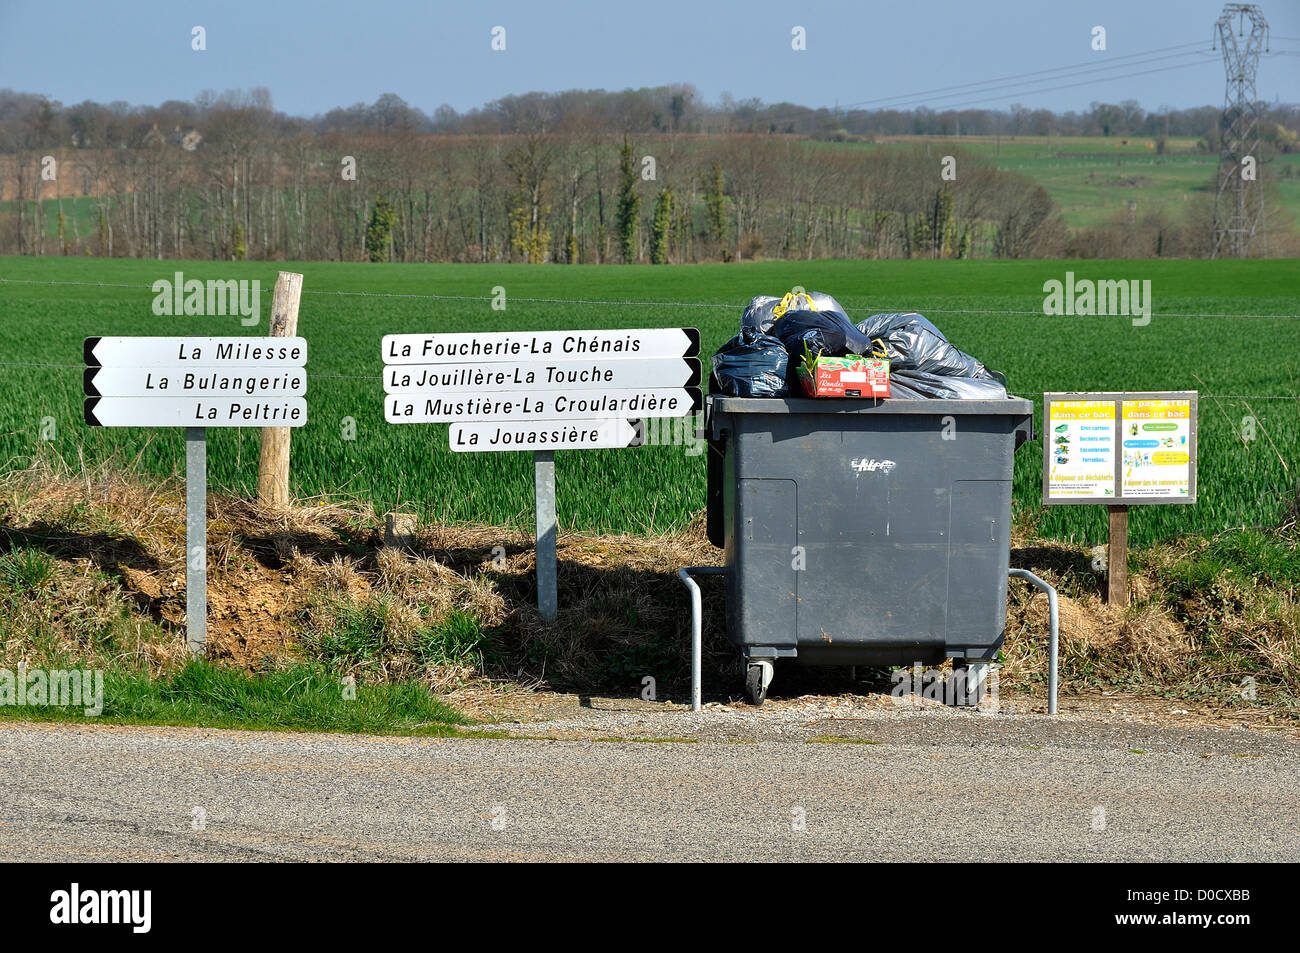 Paysage de la campagne du nord Mayenne. Conteneur à déchets, des panneaux indiquant les noms des fermes, au nord Mayenne (France). Banque D'Images